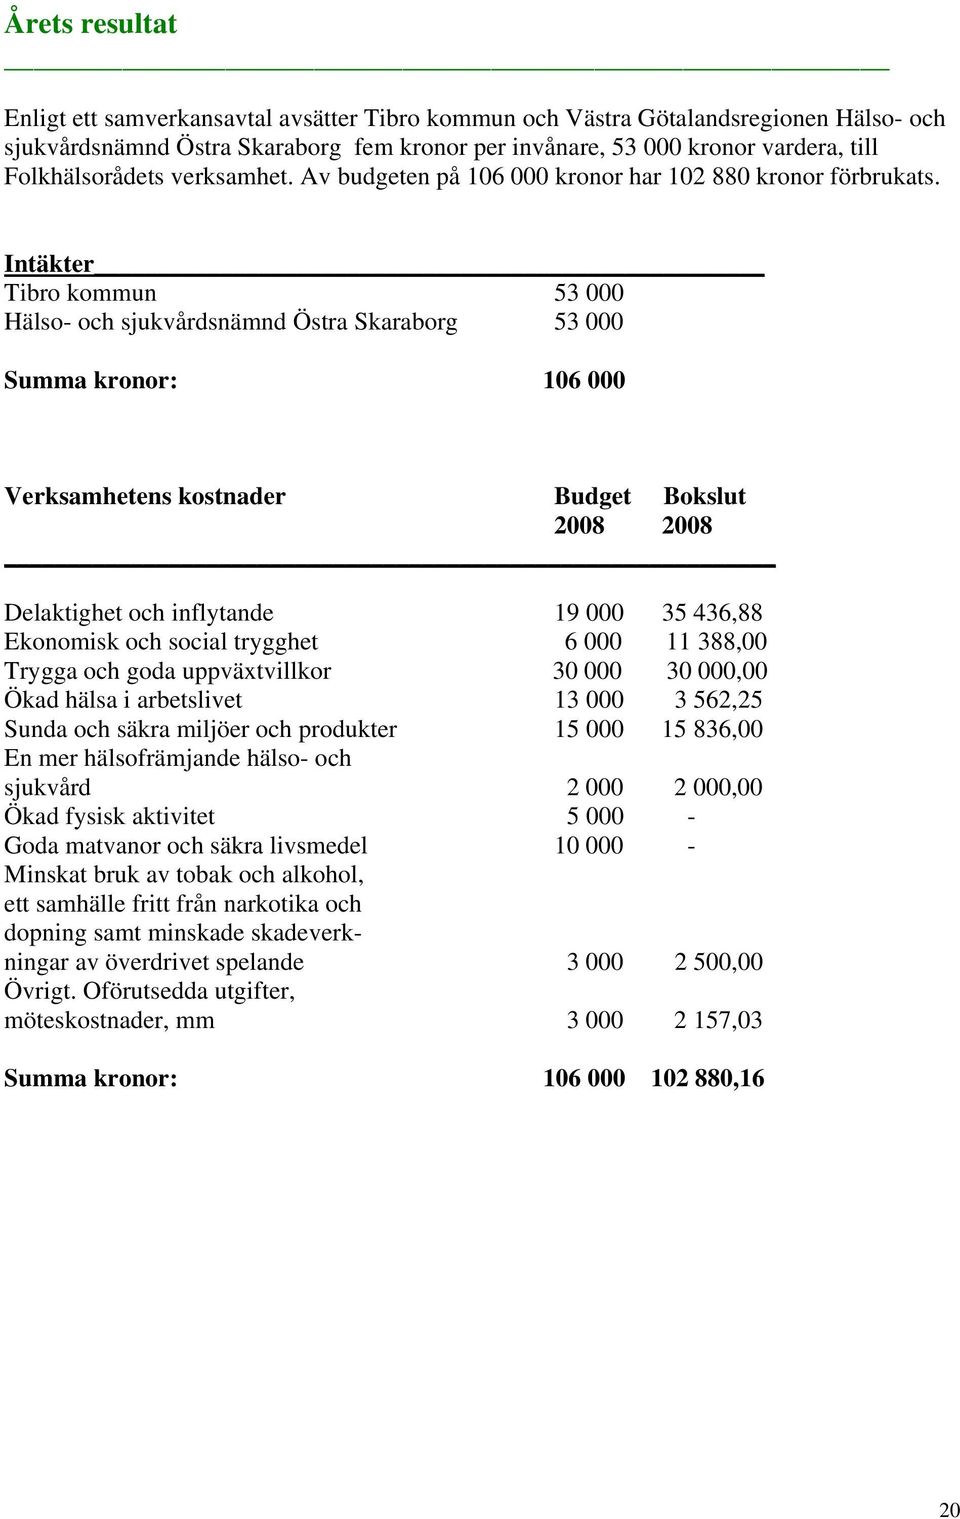 Intäkter Tibro kommun 53 000 Hälso- och sjukvårdsnämnd Östra Skaraborg 53 000 Summa kronor: 106 000 Verksamhetens kostnader Budget Bokslut 2008 2008 Delaktighet och inflytande 19 000 35 436,88